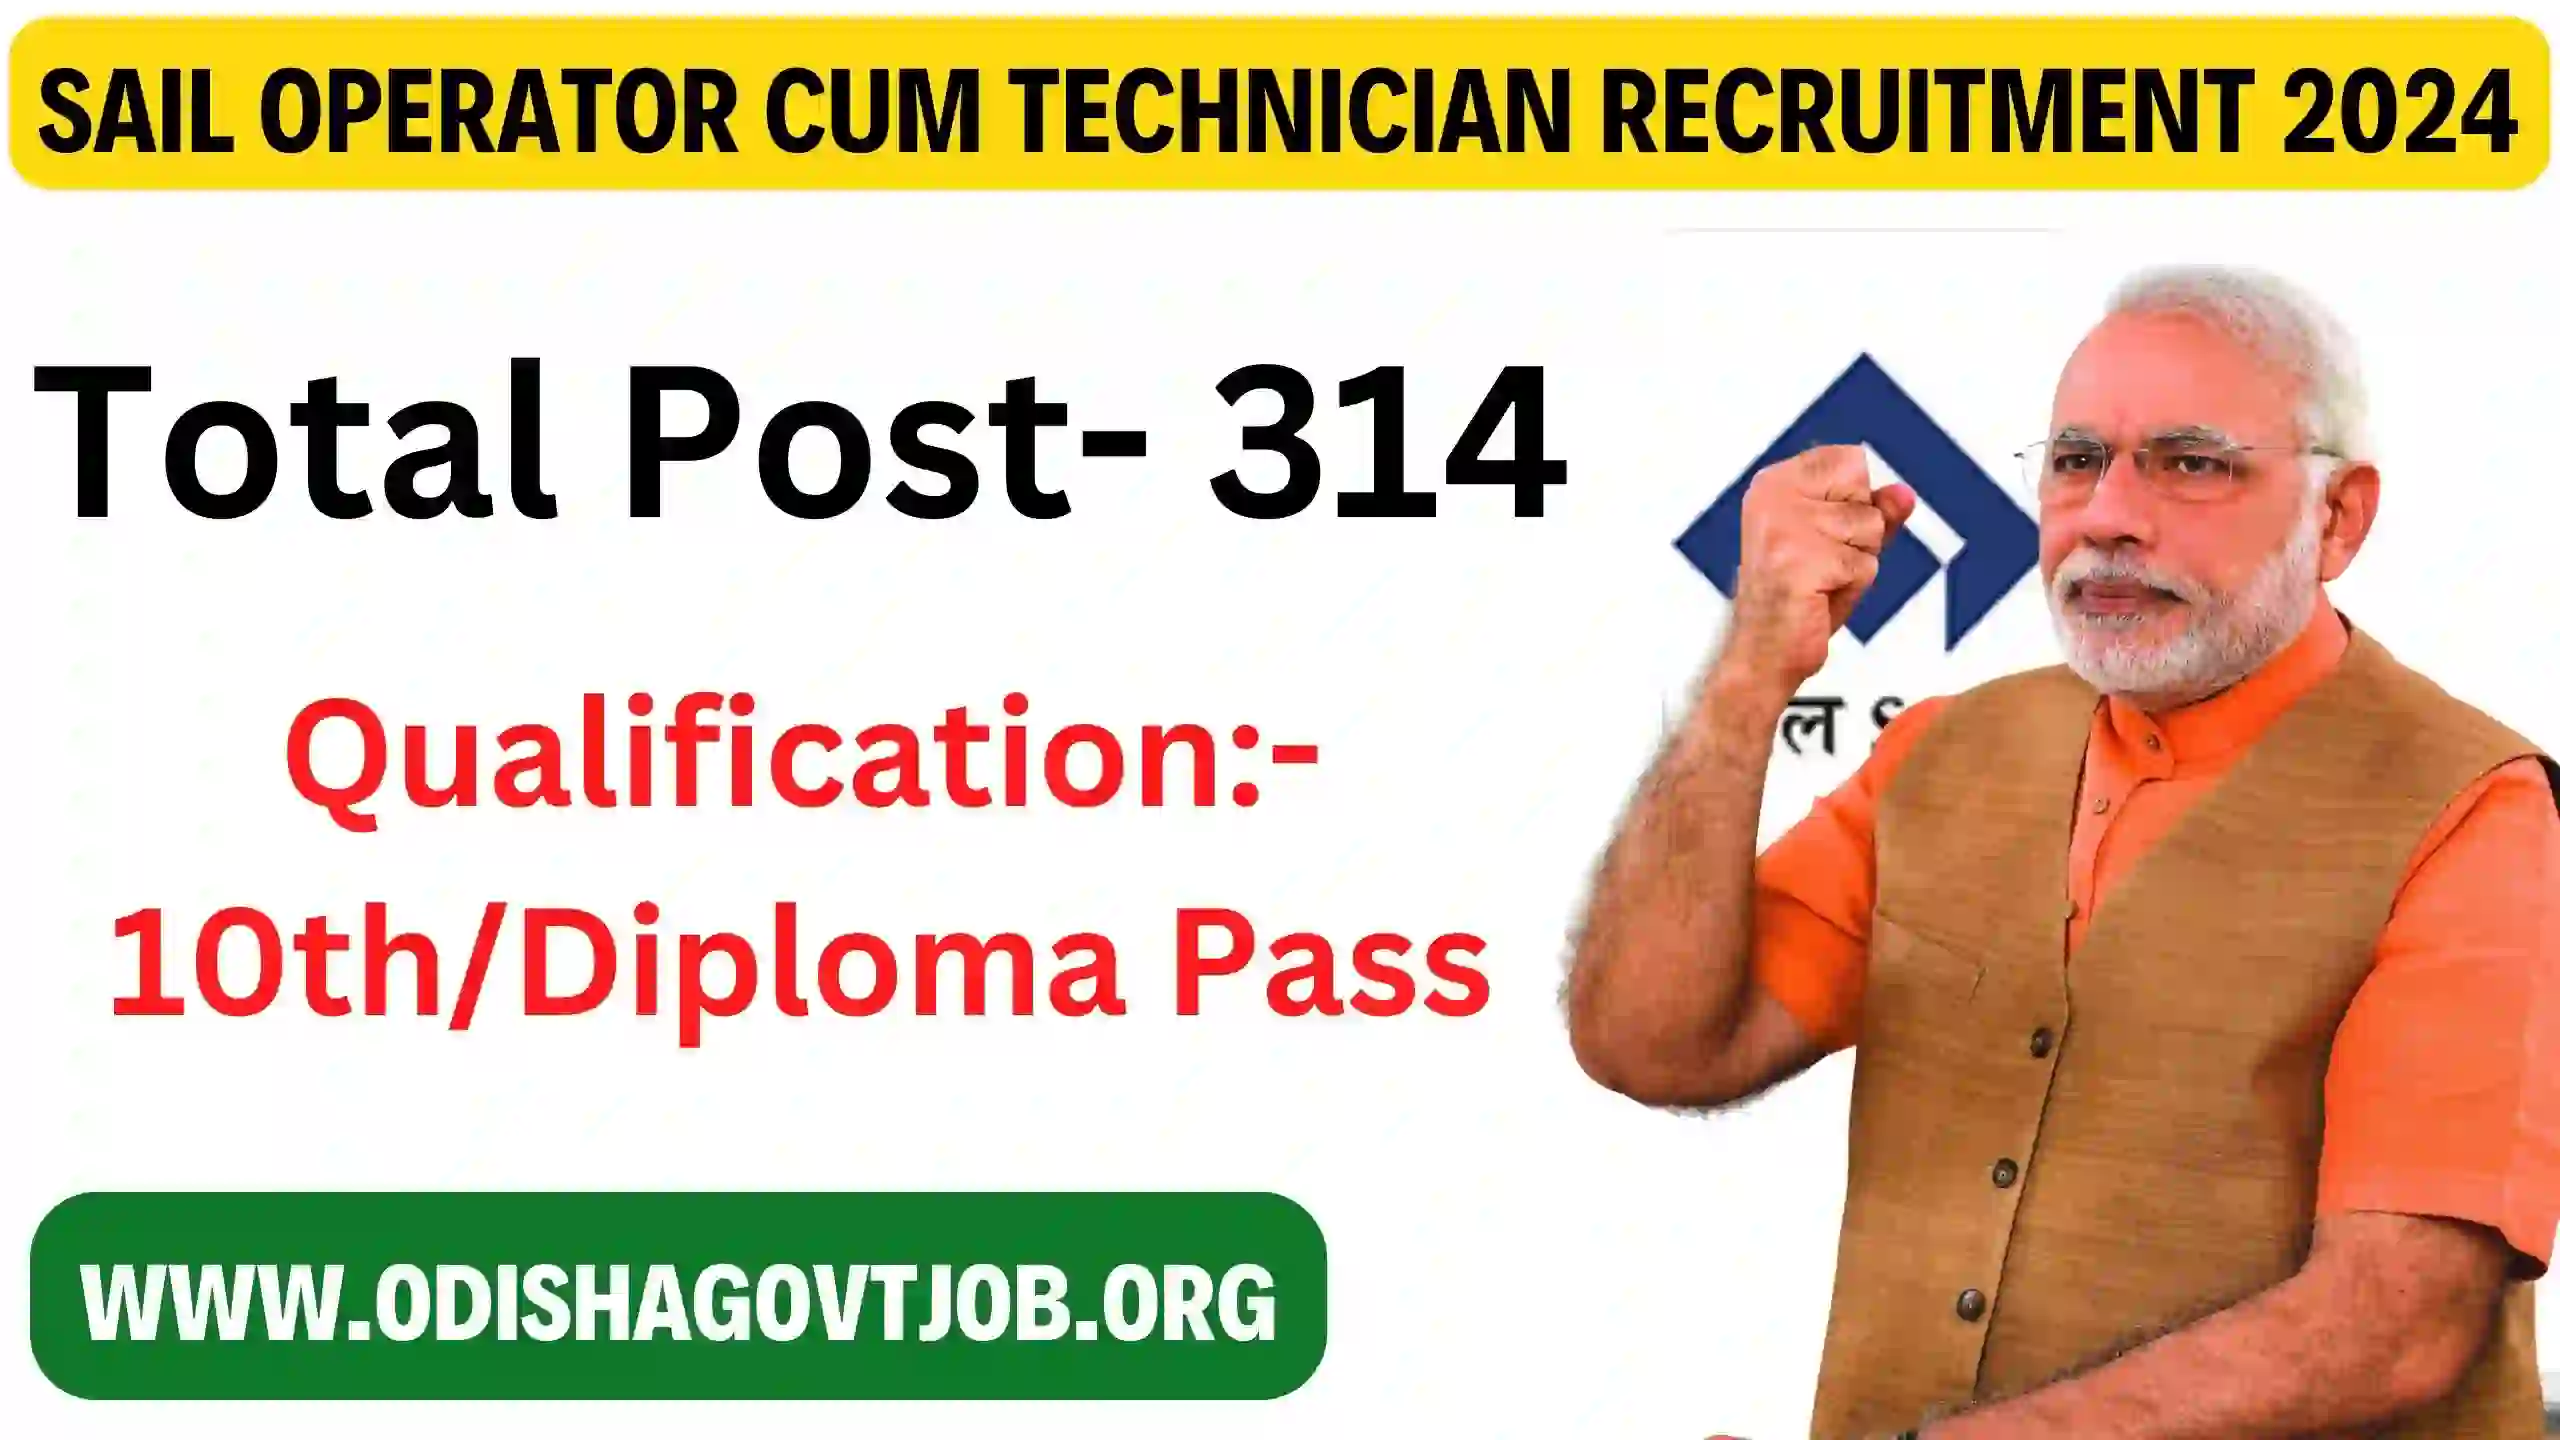 Sail Operator Cum Technician Recruitment 2024